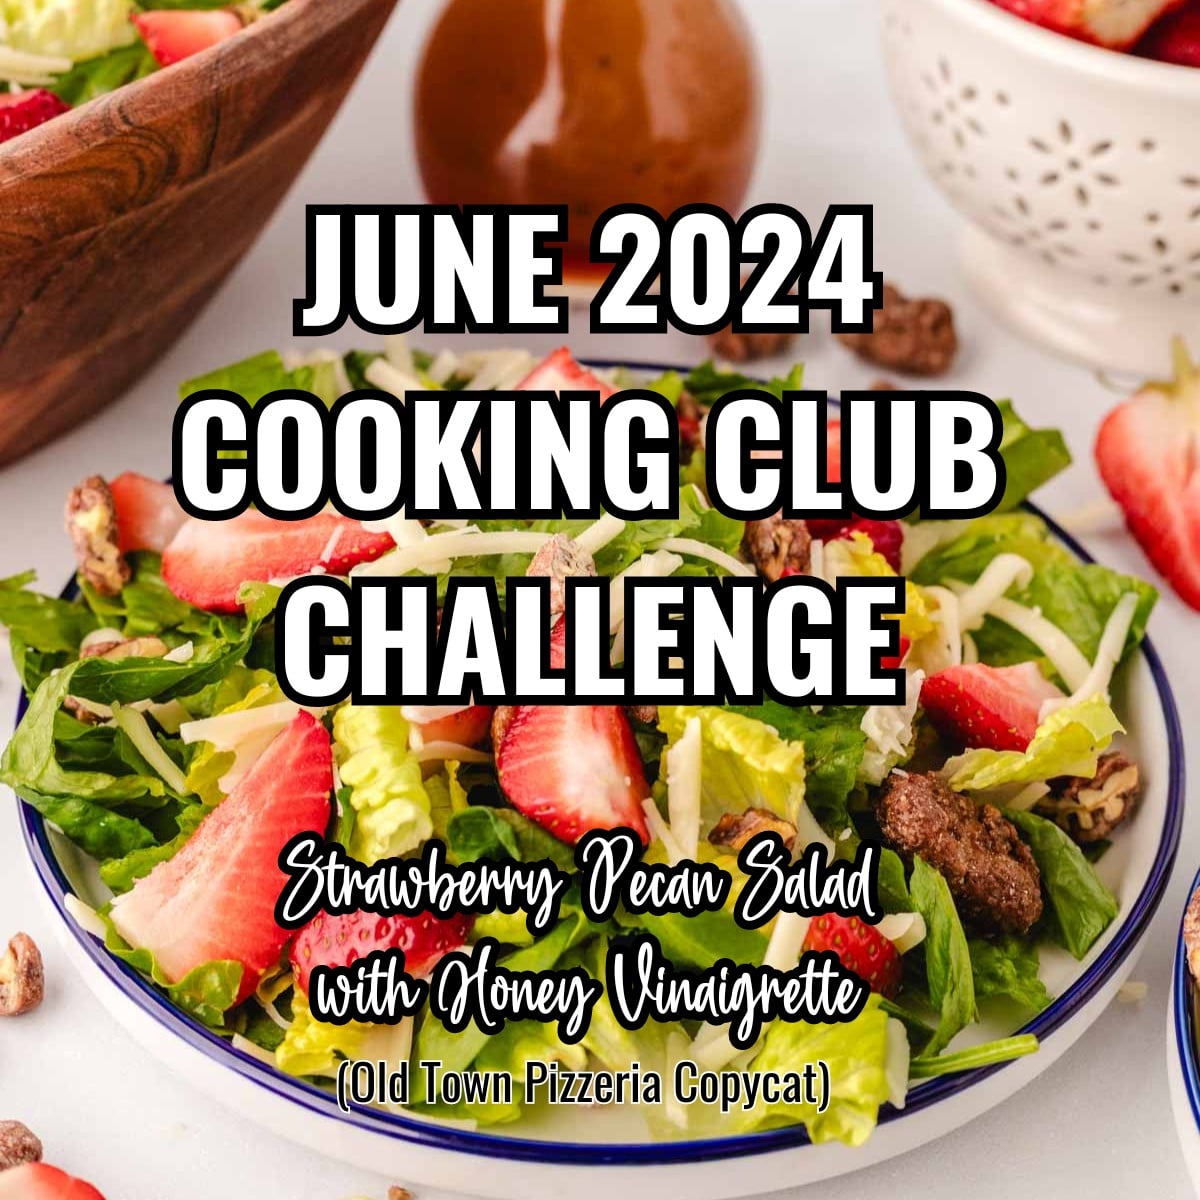 Cooking Club Challenge June 2024